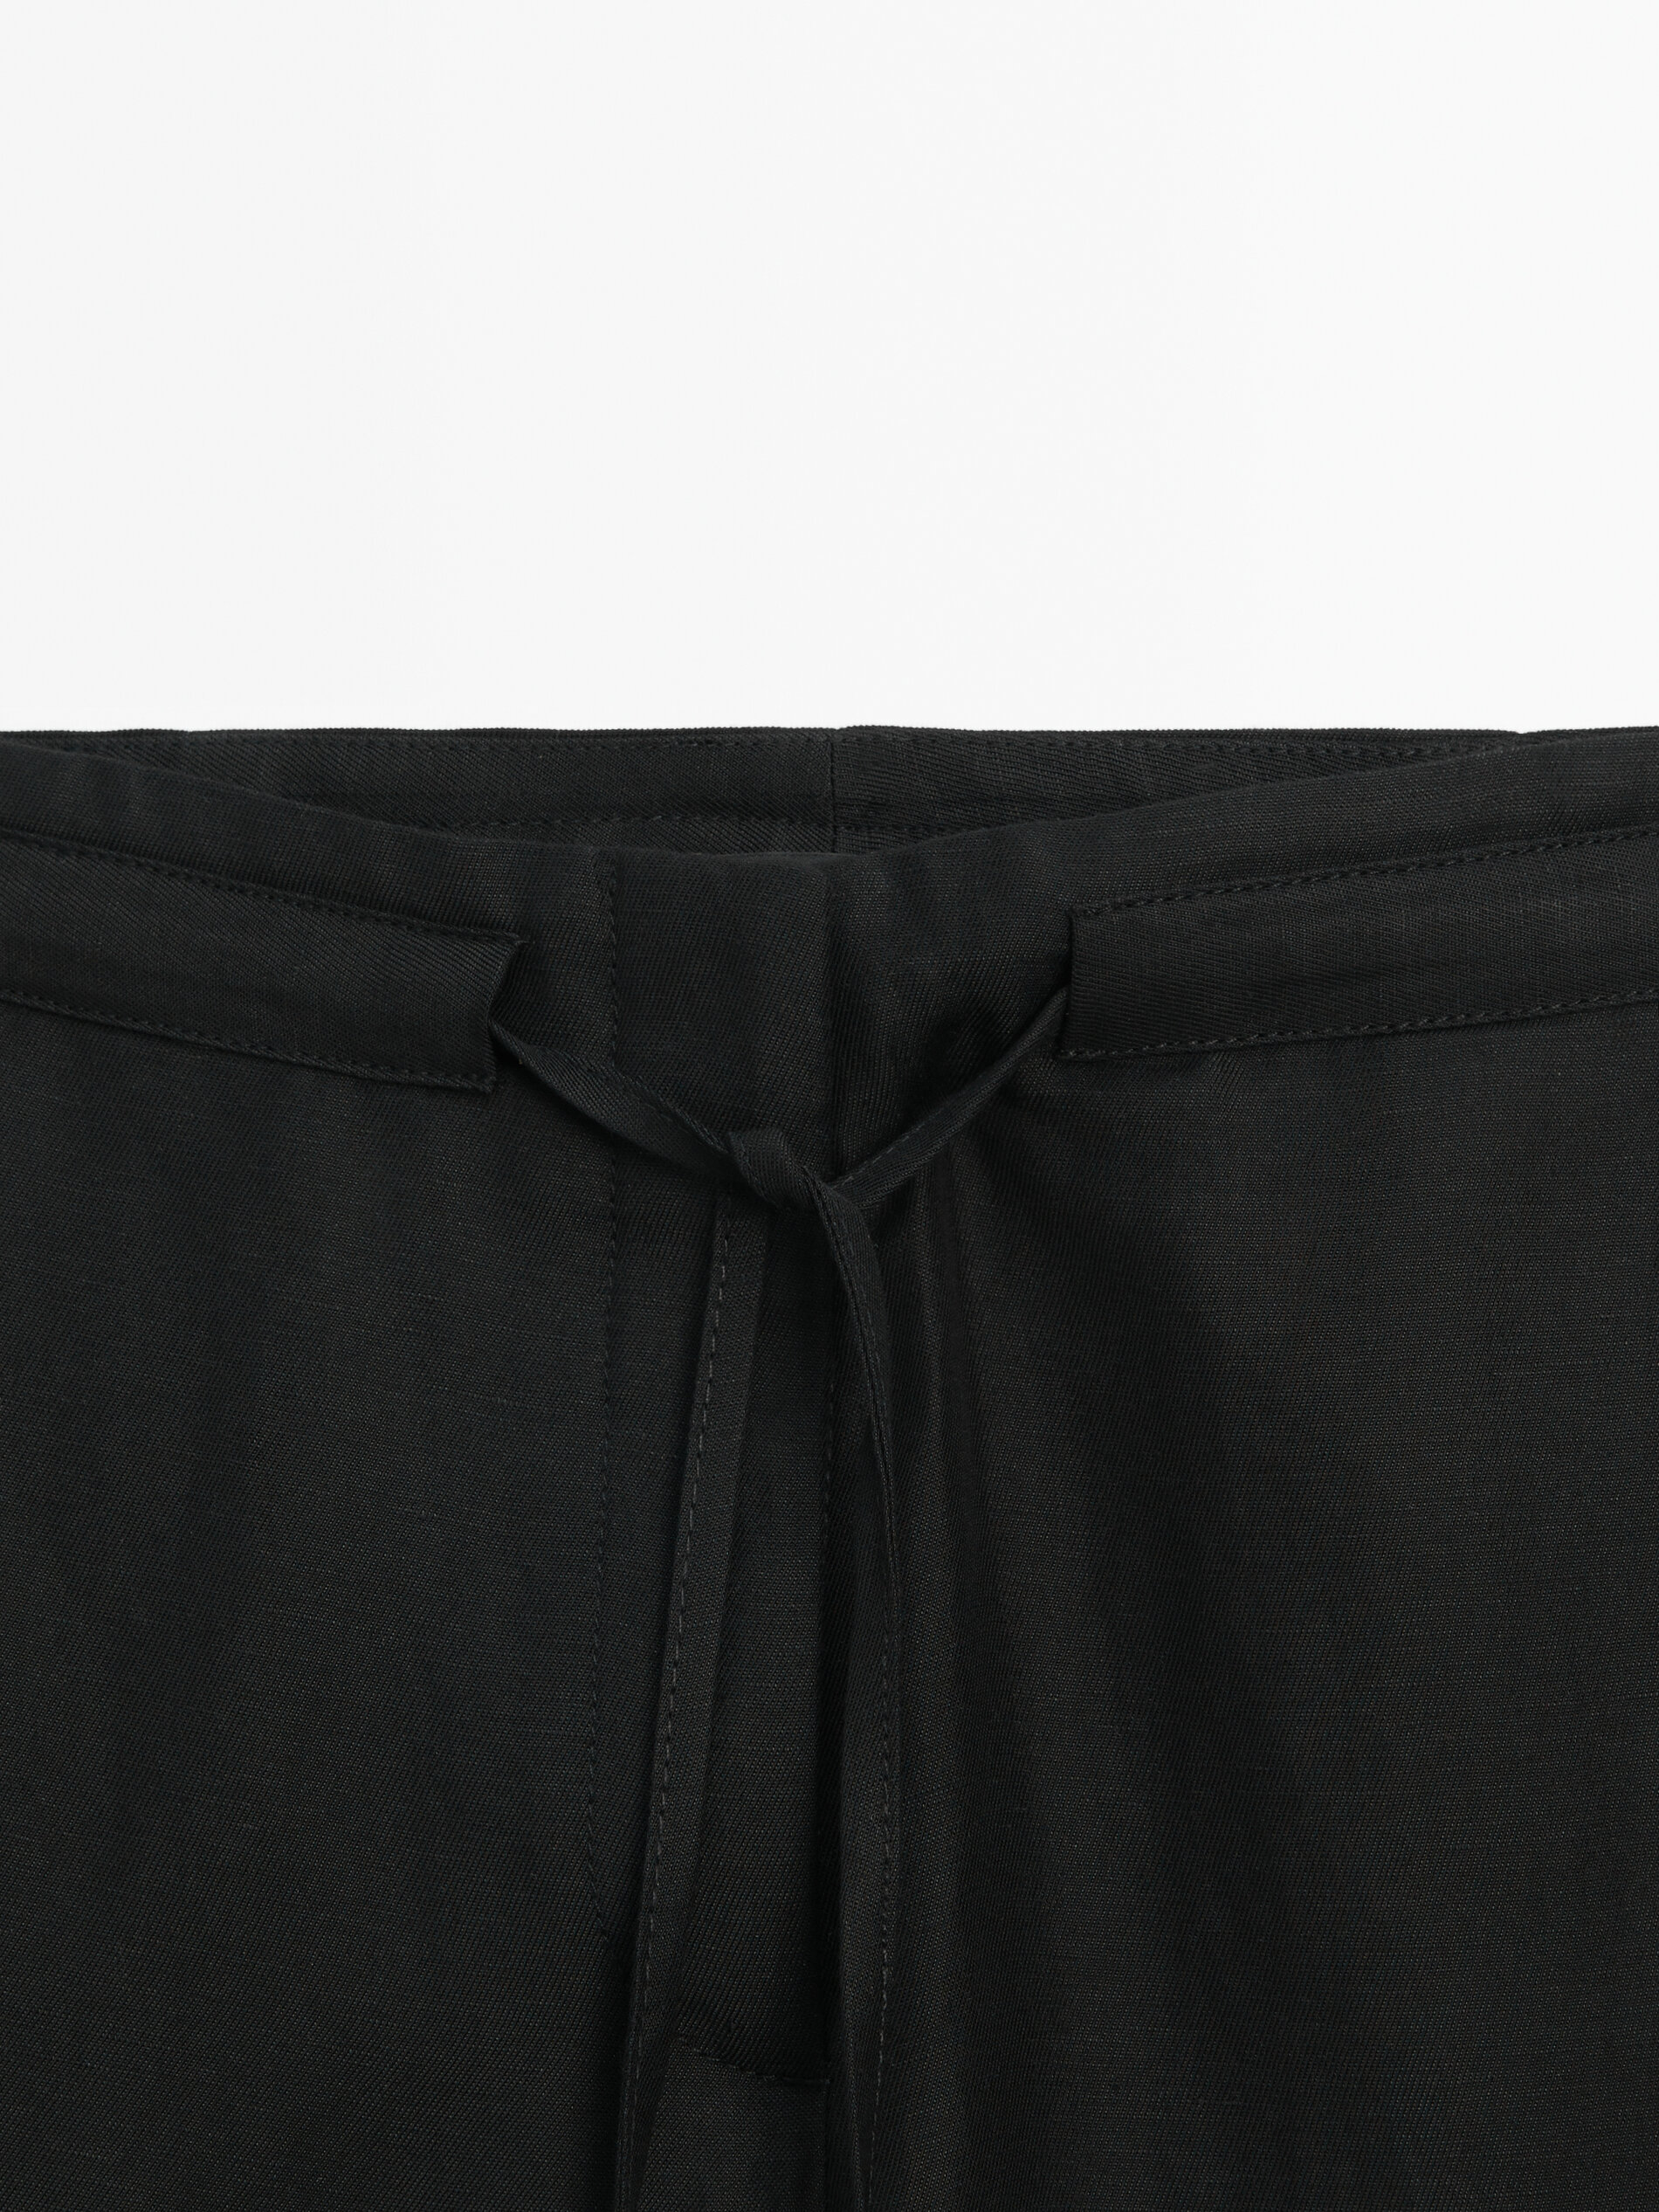 Pantalón negro cordones conjunto